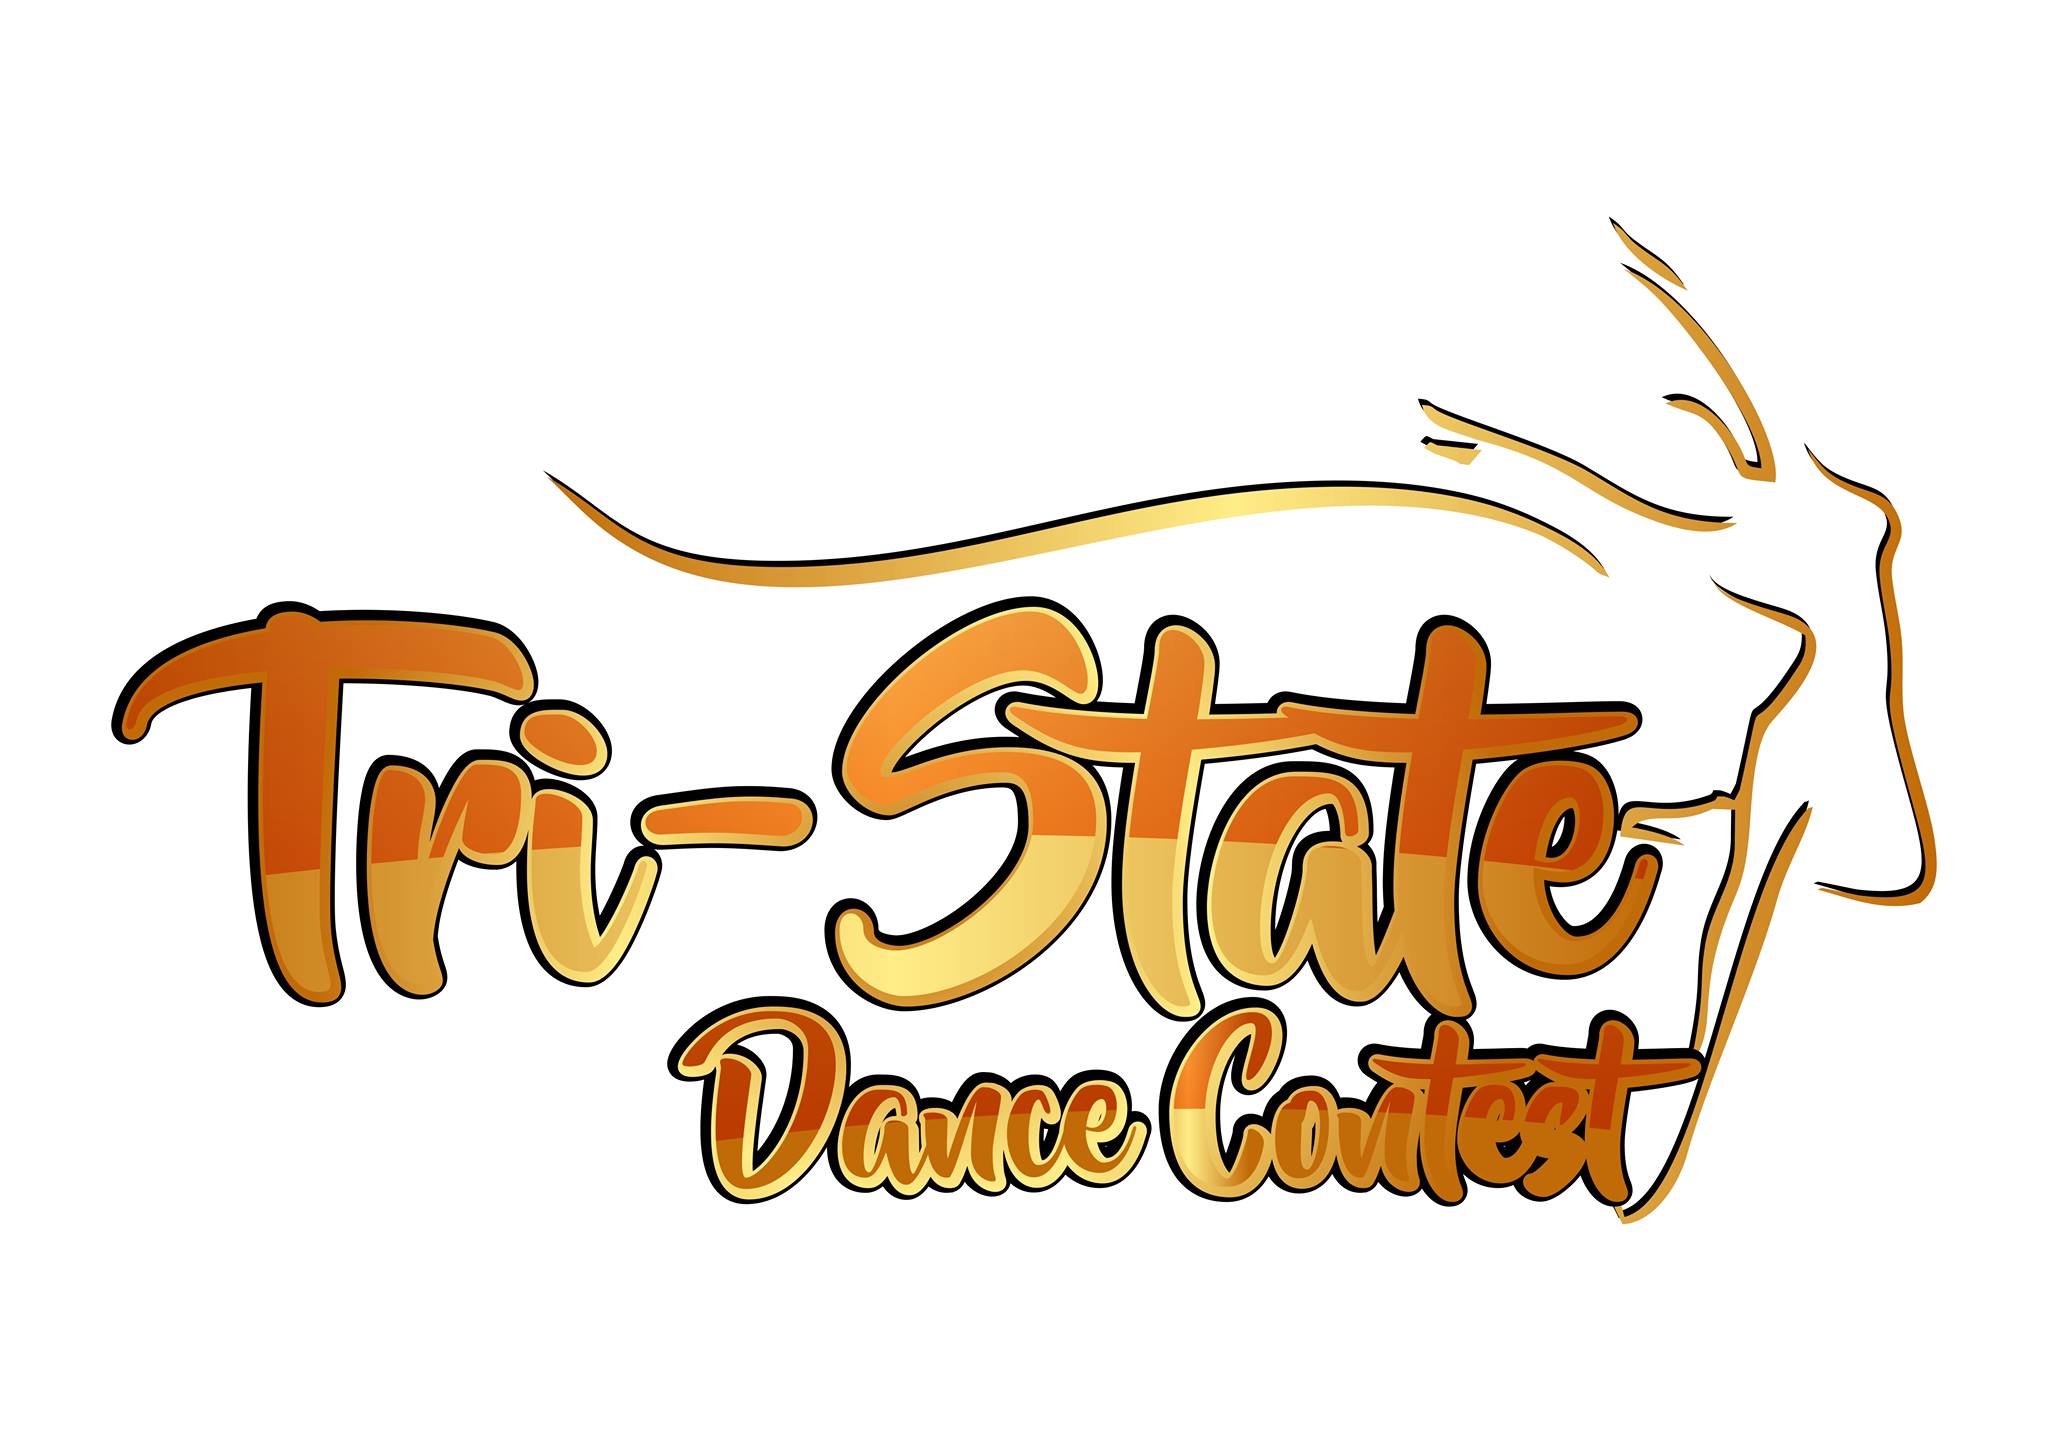 Tri-State Dance Contest